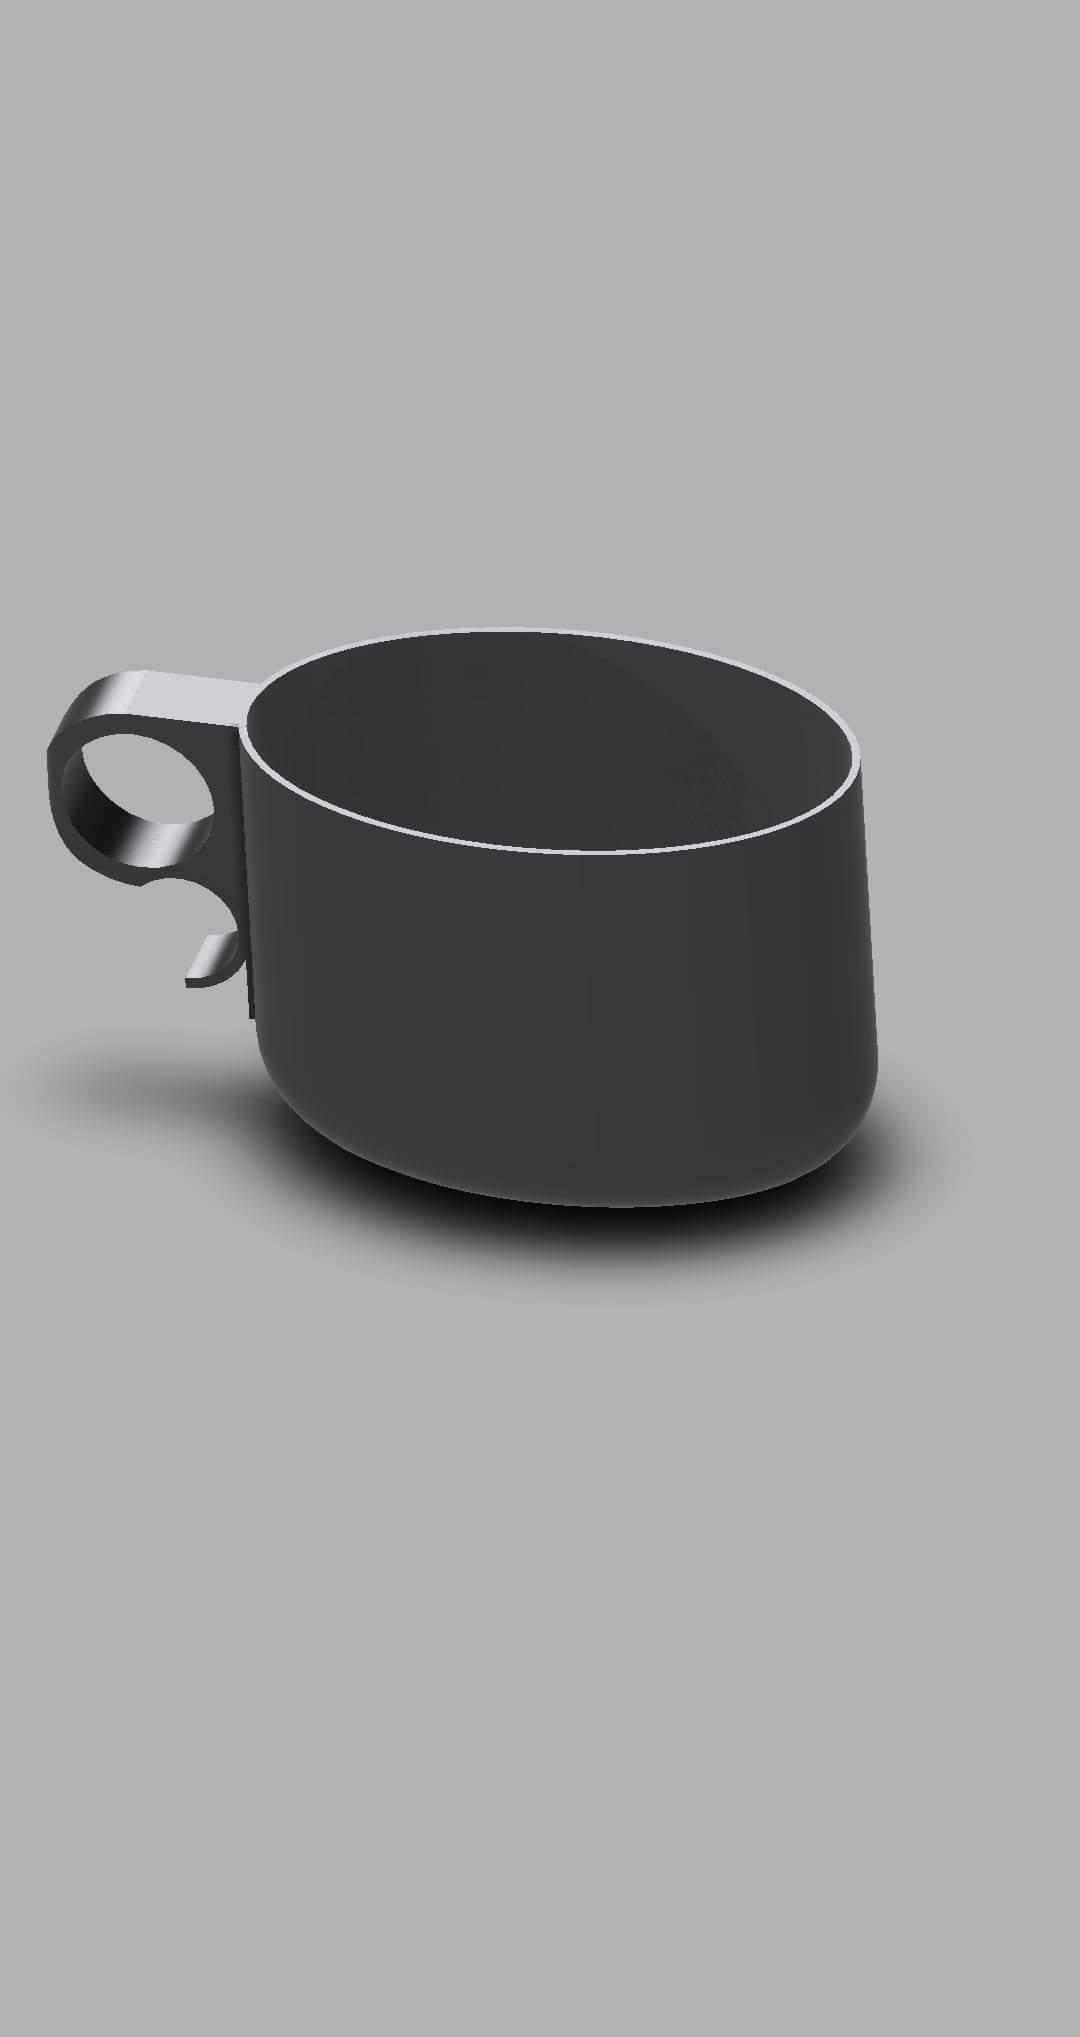 Measure_cup v1.stl 3d model